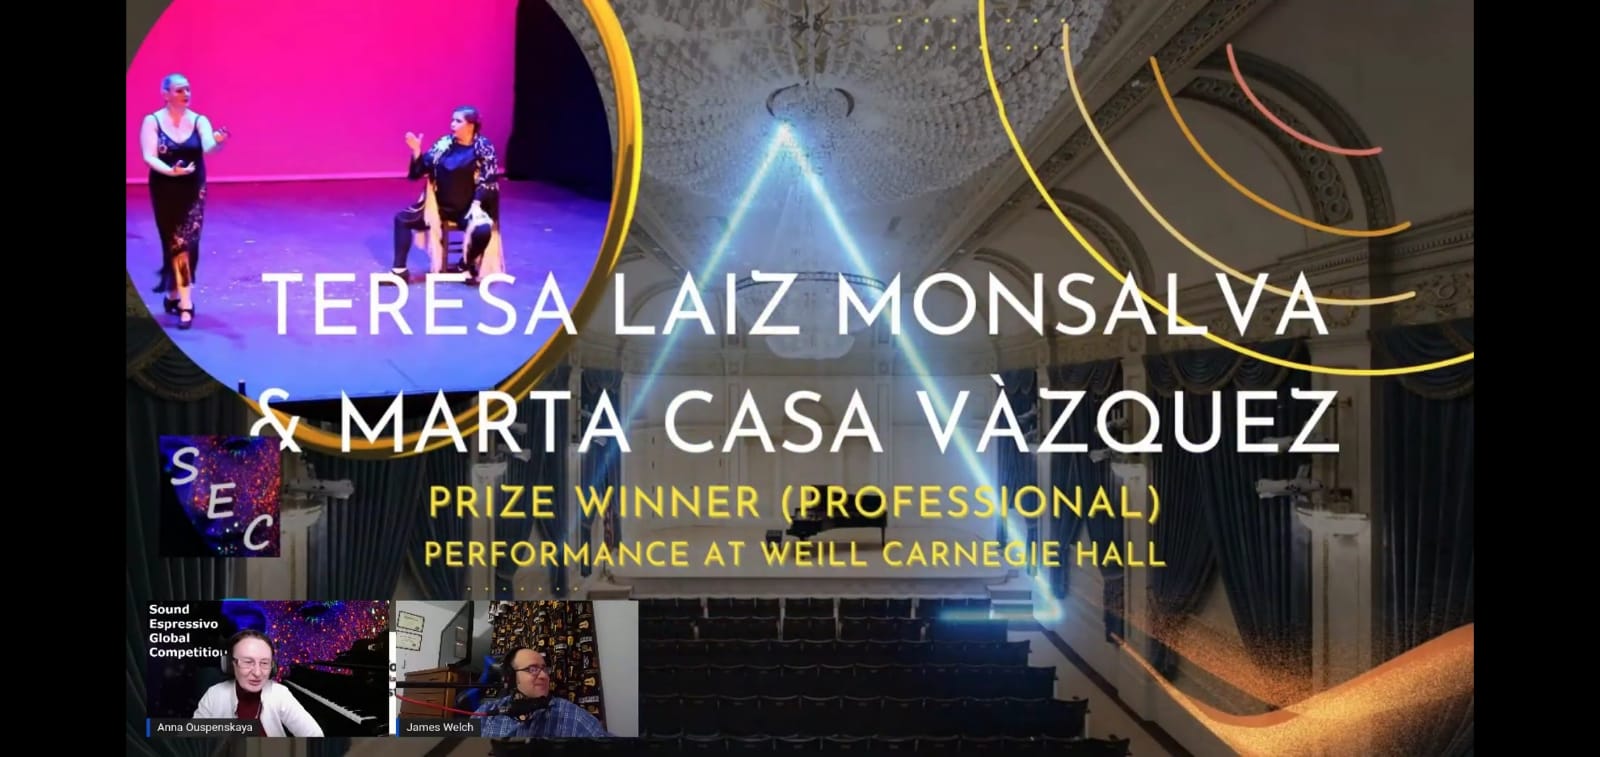 Premio Performance at Weill Carnegie Hall